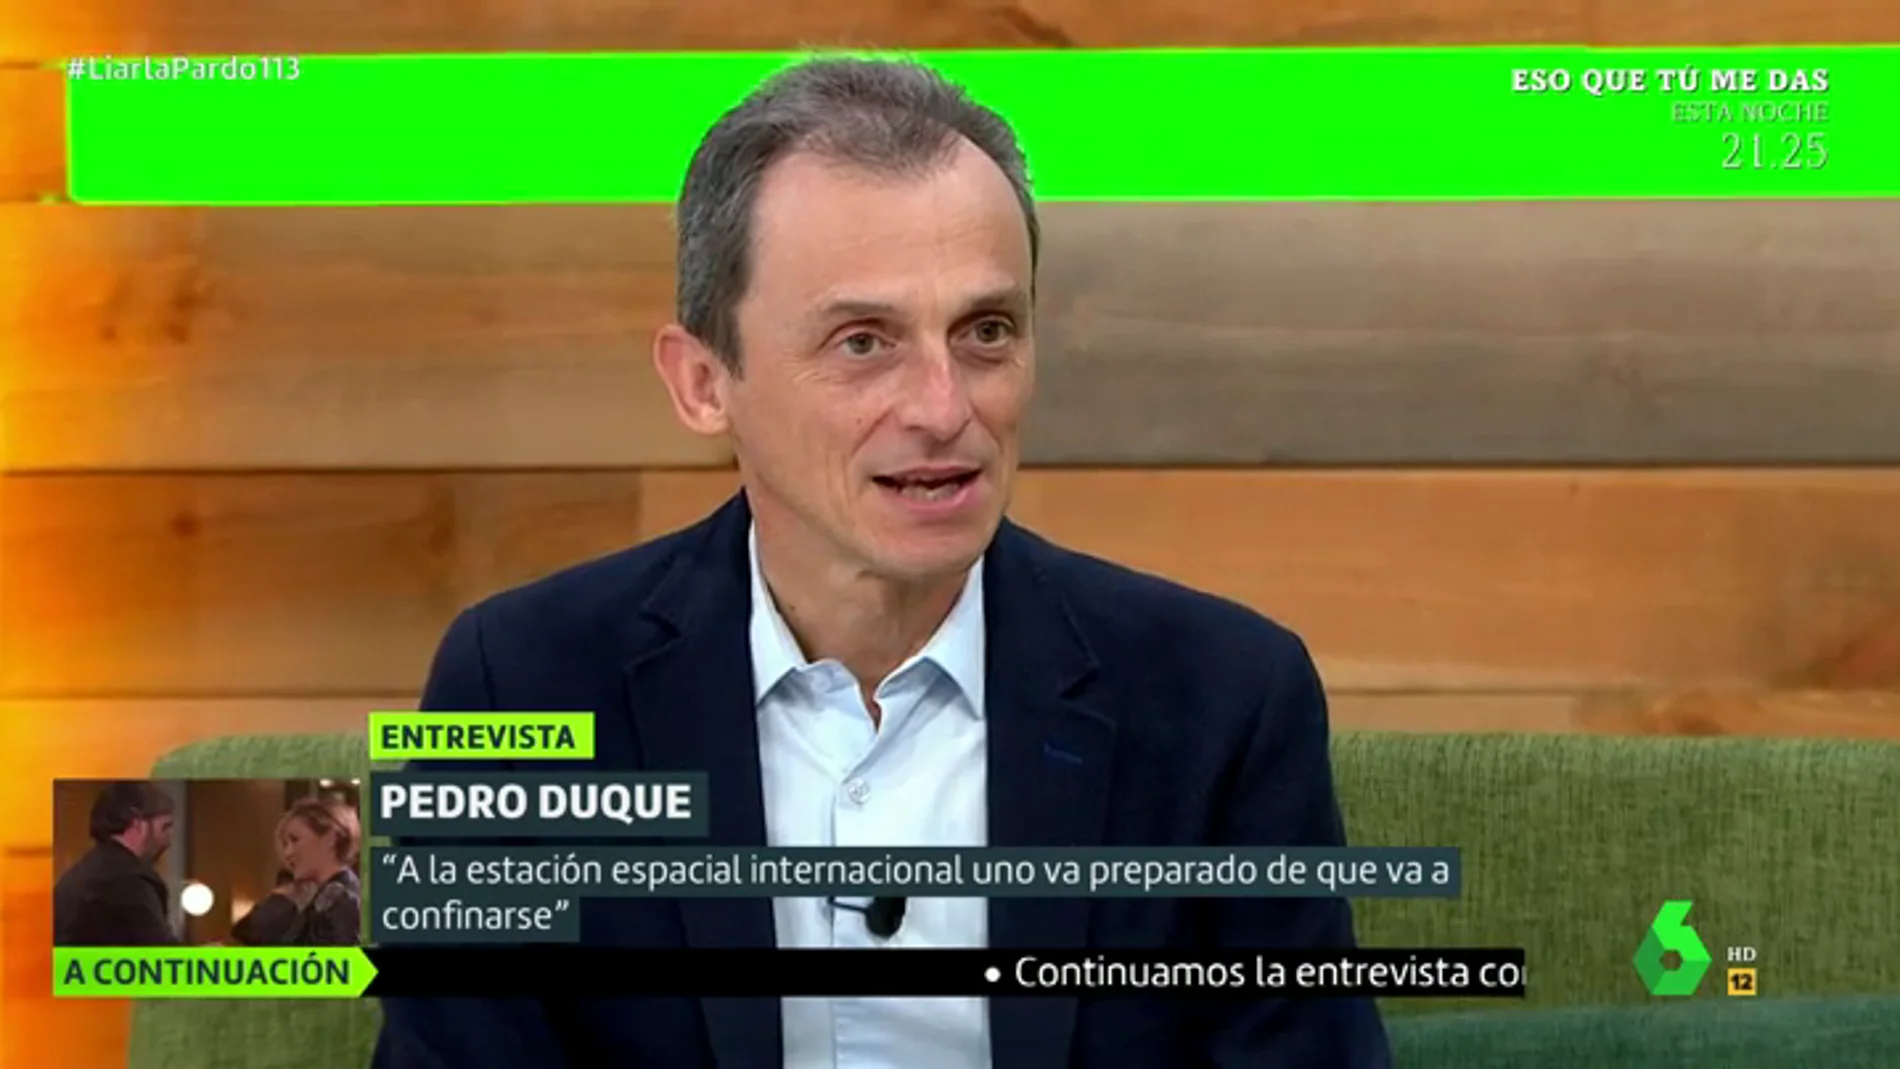 Pedro Duque confiesa qué es lo que más le ha sorprendido de la política desde que empezó a trabajar como político